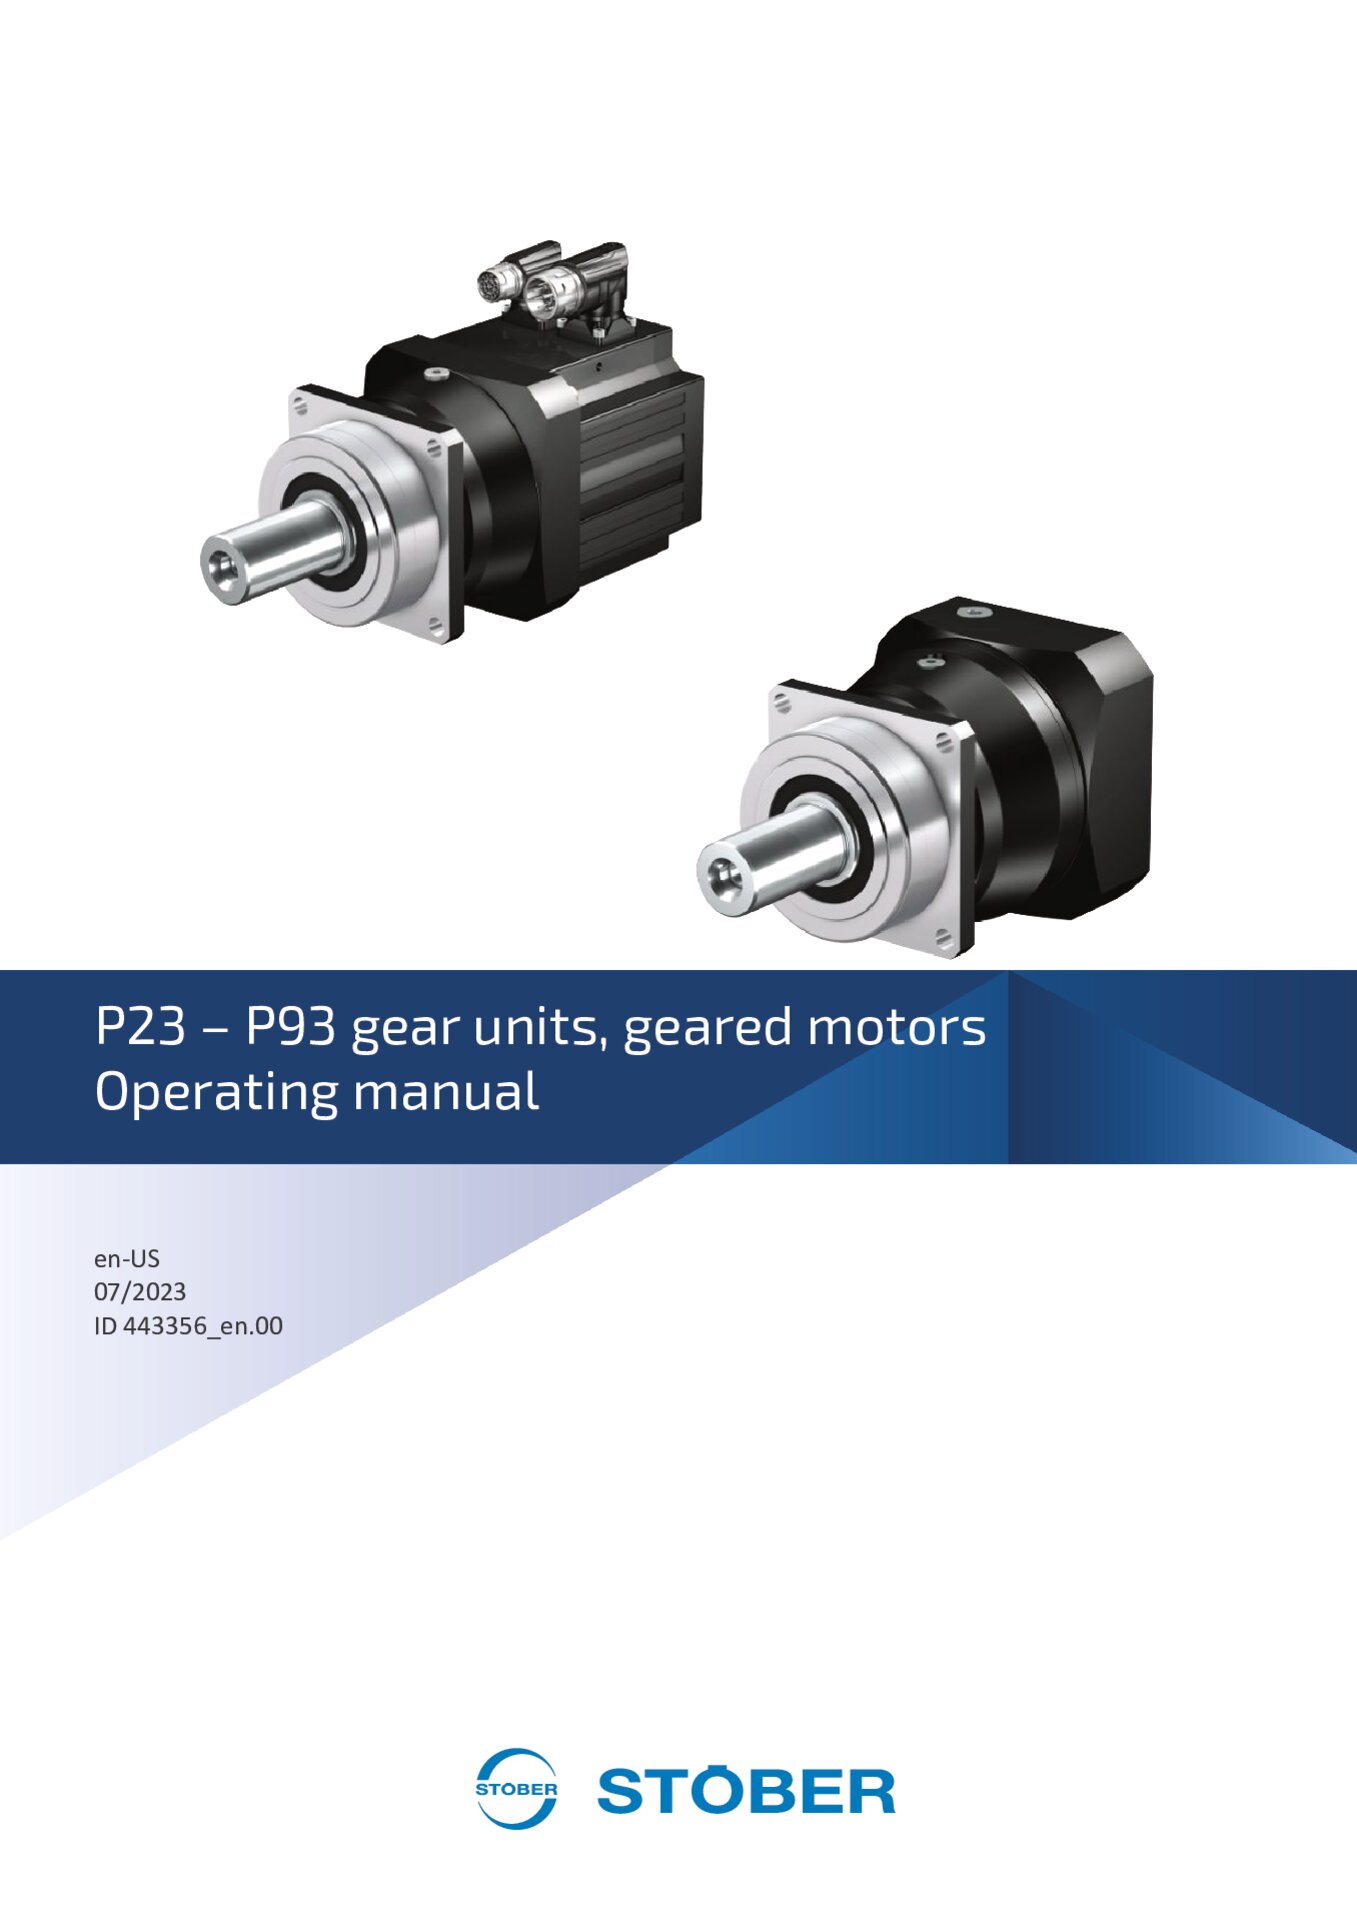 Operating manual P23 - P93 gear units and geared motors